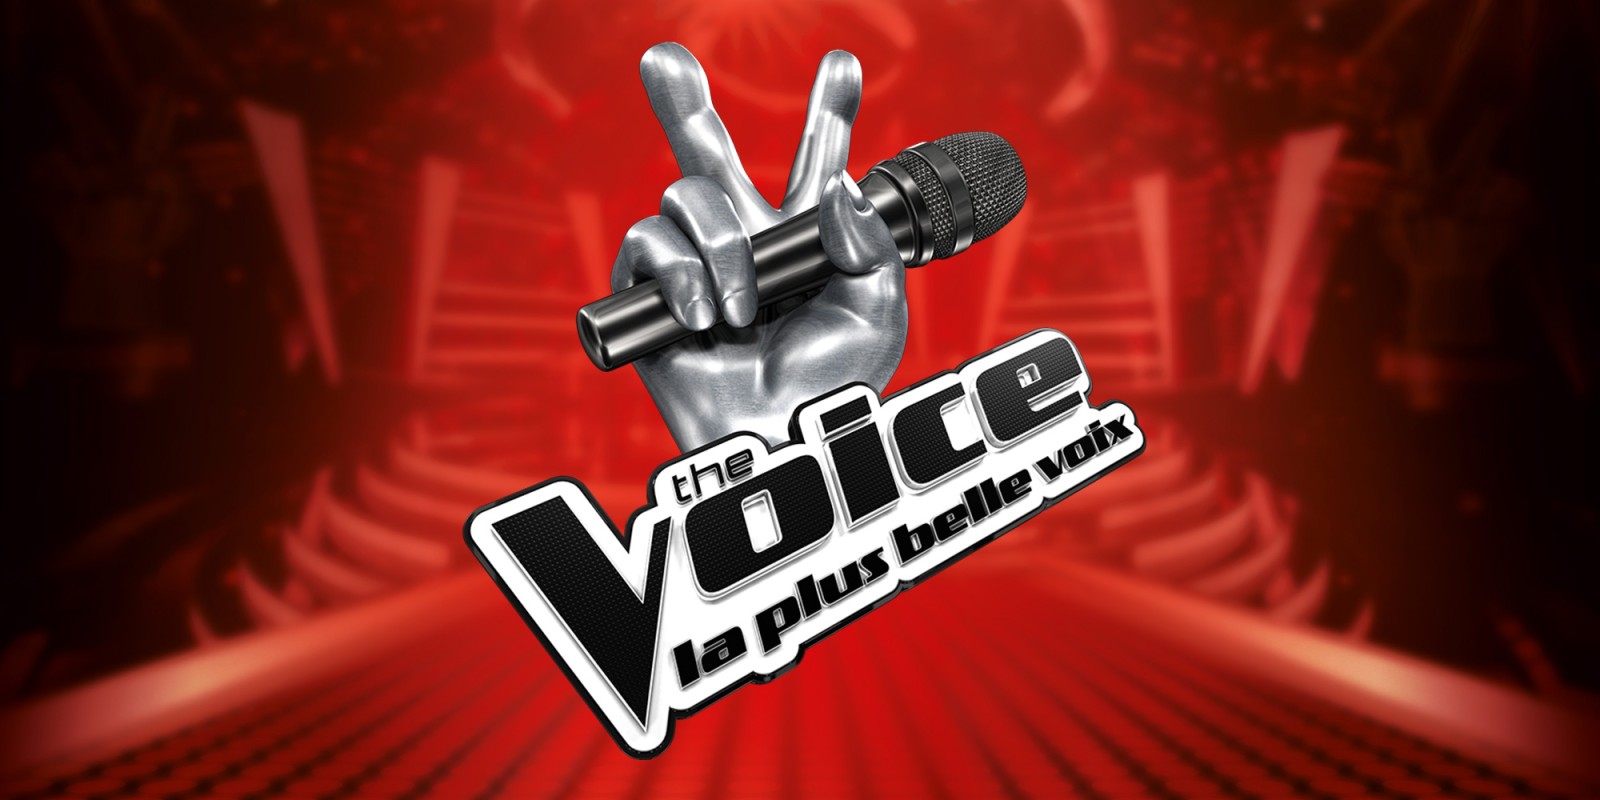 The Voice : Découvrez tous les détails de l’édition All Stars prévue pour les 10 ans de l’émission !